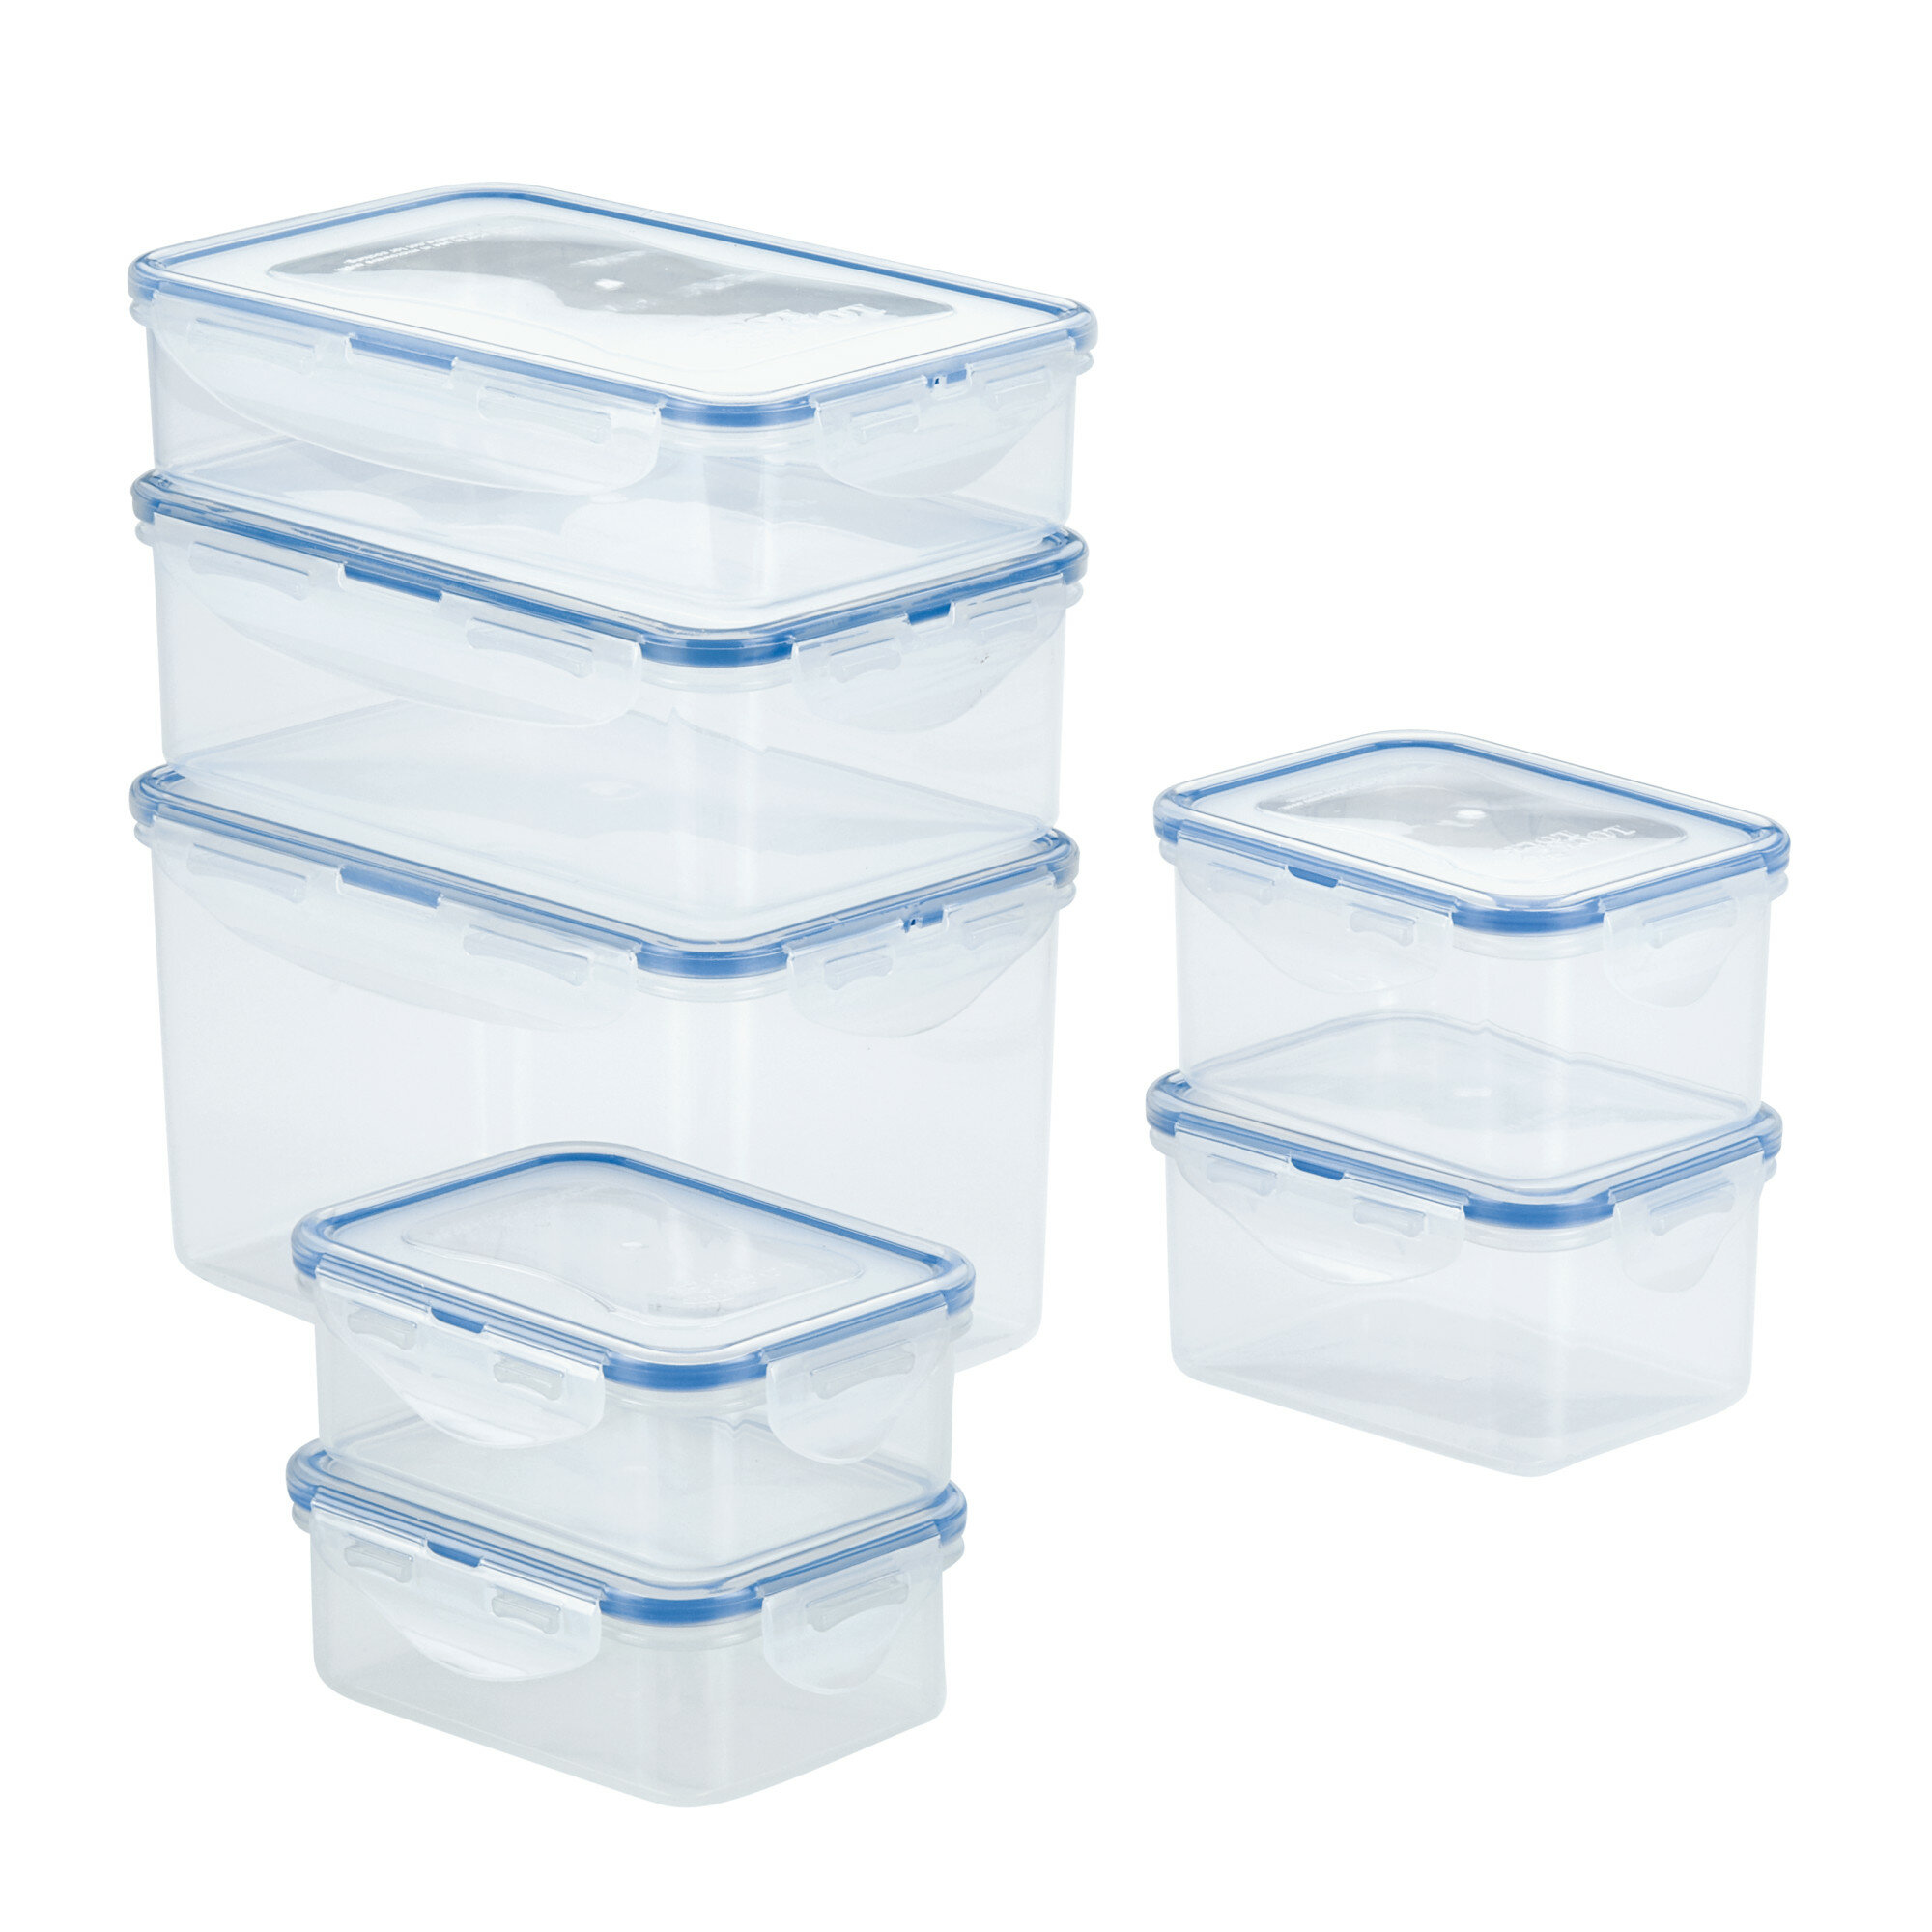 https://assets.wfcdn.com/im/58396120/compr-r85/9381/93815132/easy-essentials-rectangular-food-storage-container-set-14-piece.jpg